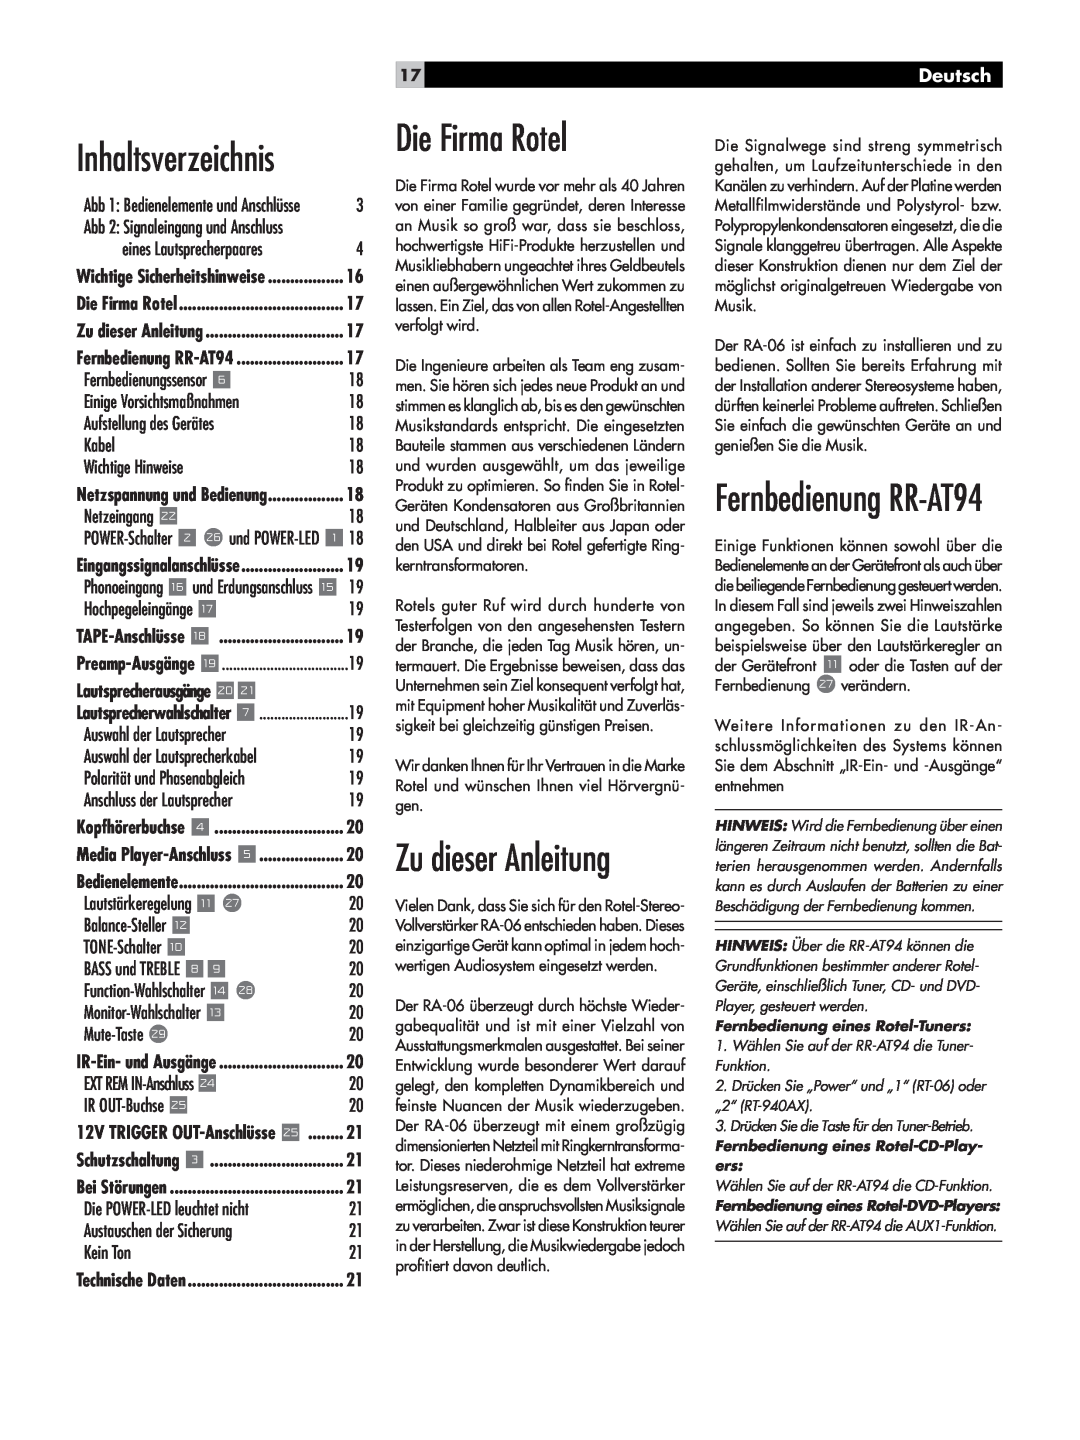 Rotel RA-06 owner manual Die Firma Rotel, Inhaltsverzeichnis, Zu dieser Anleitung, Fernbedienung RR-AT94, Deutsch 